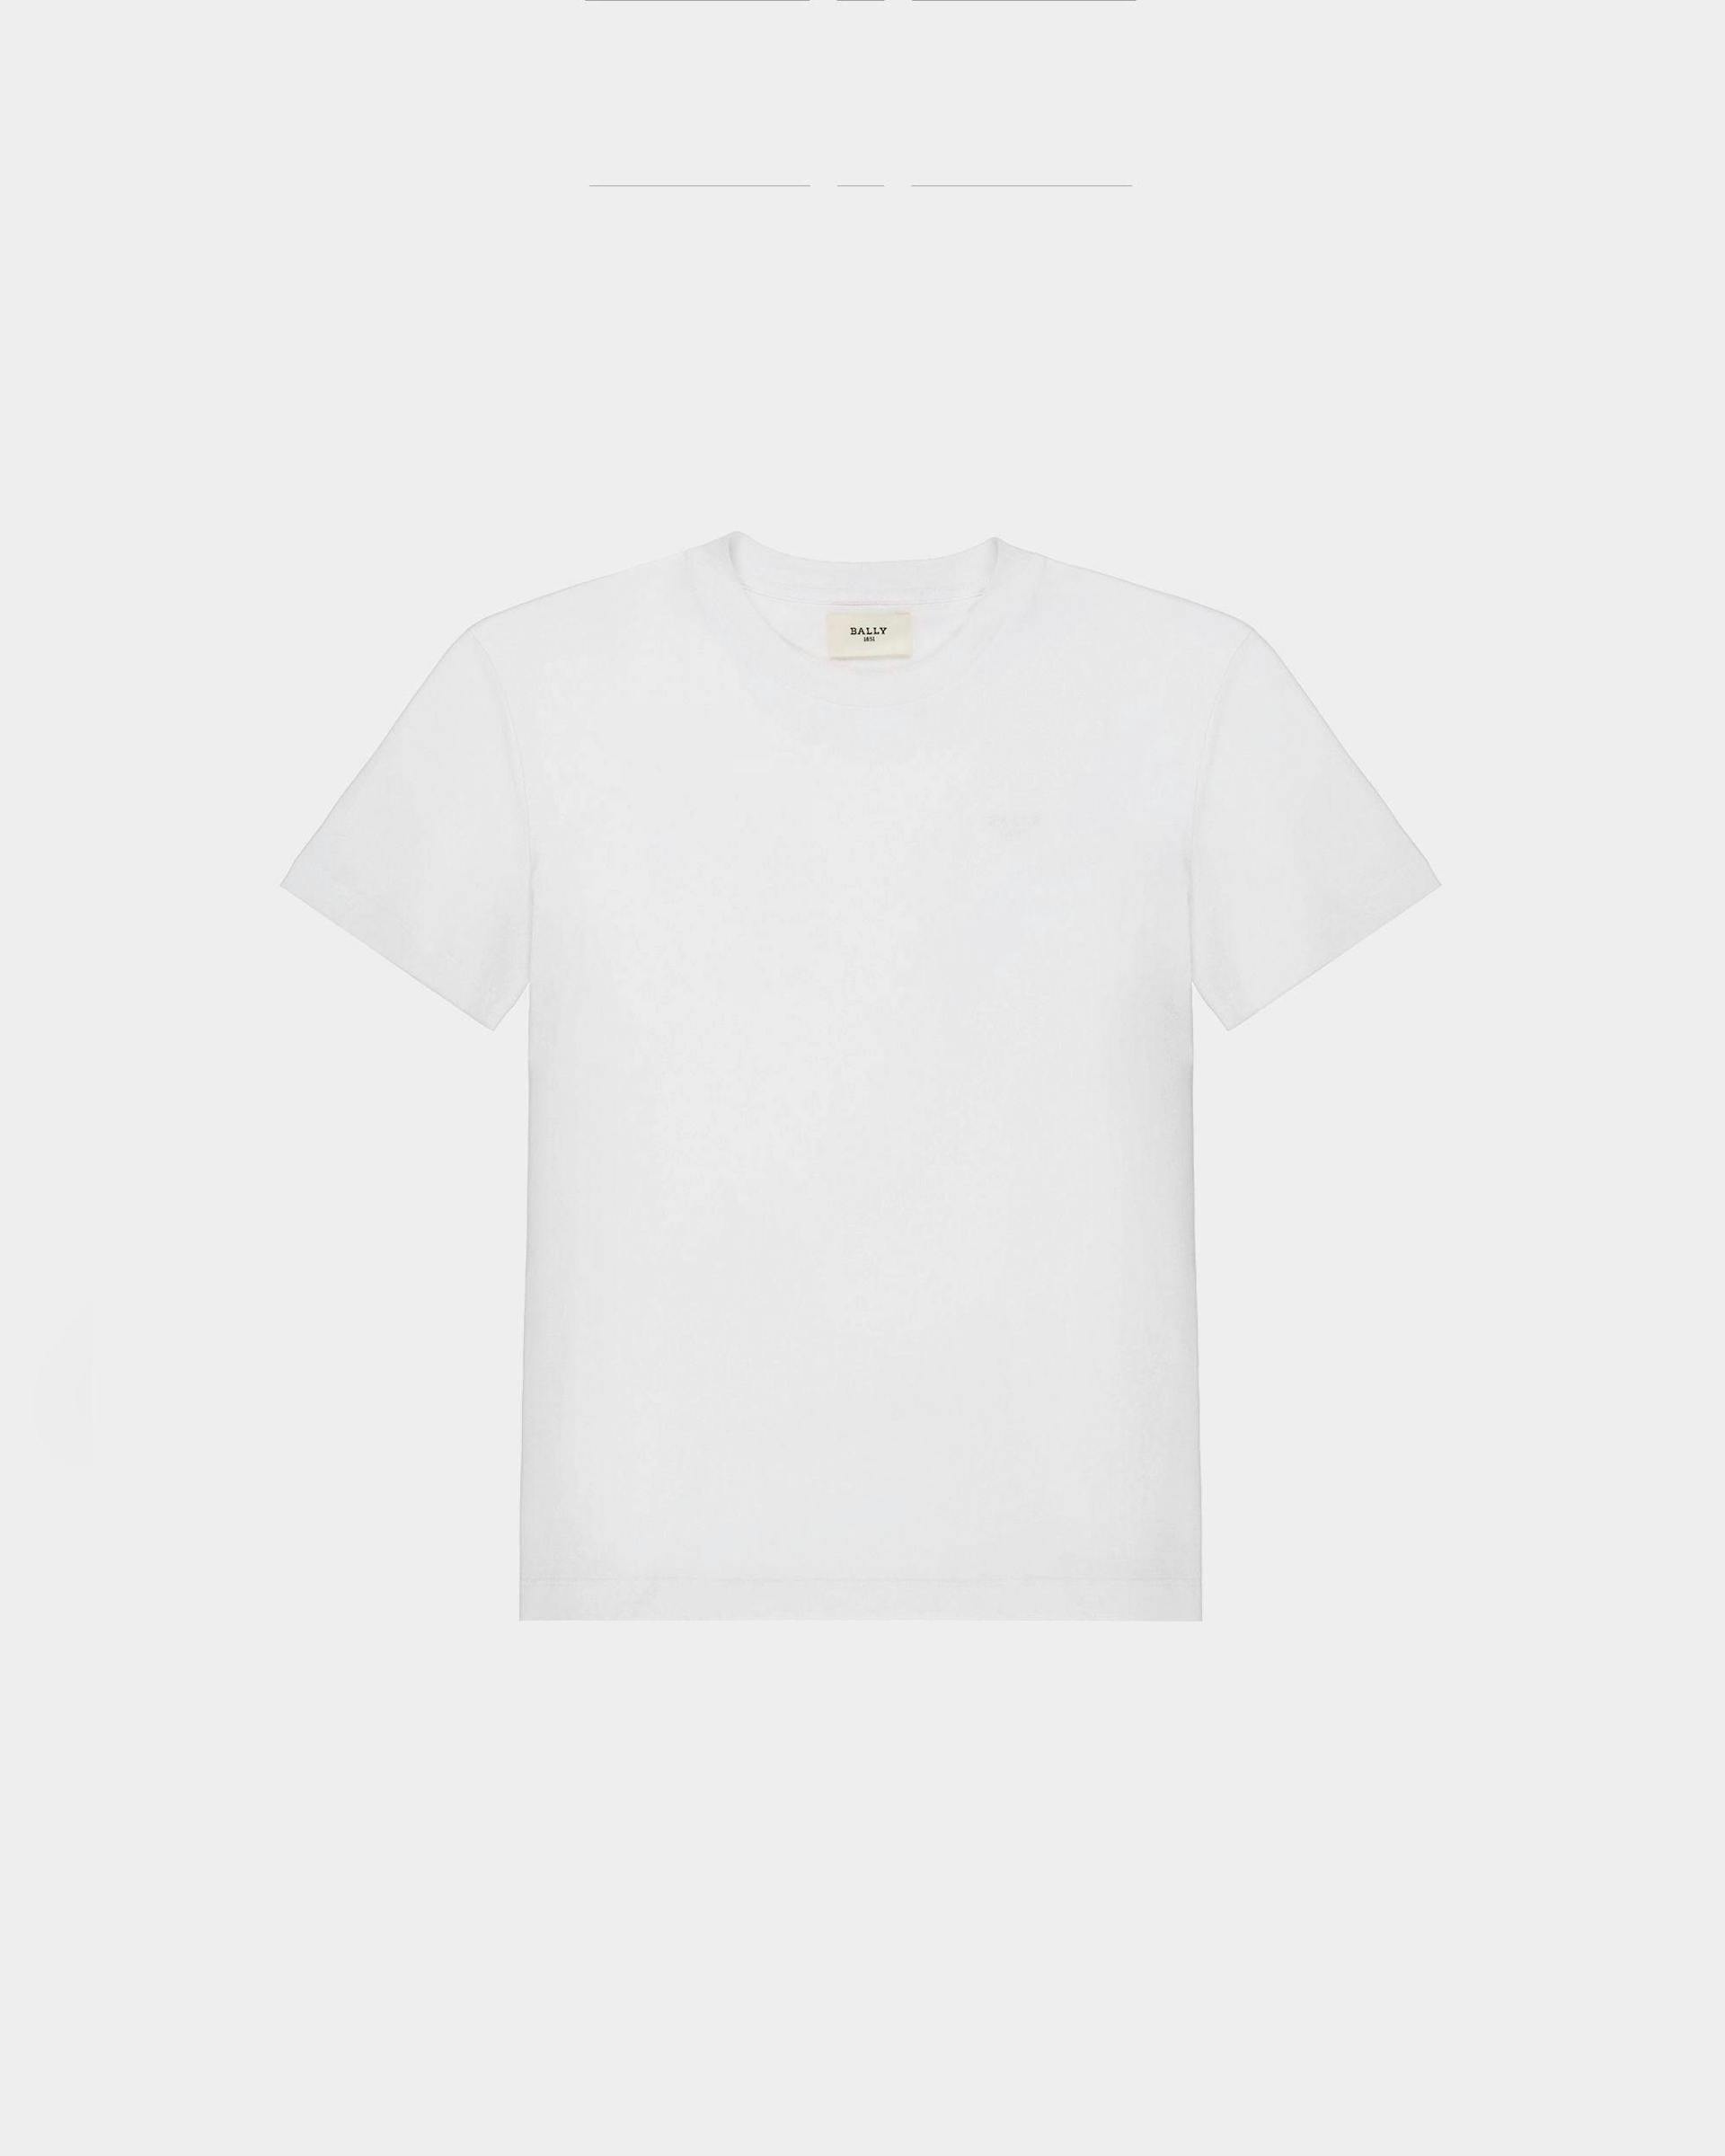 T-Shirt Aus Weisser Bio-Baumwolle - Damen - Bally - 01